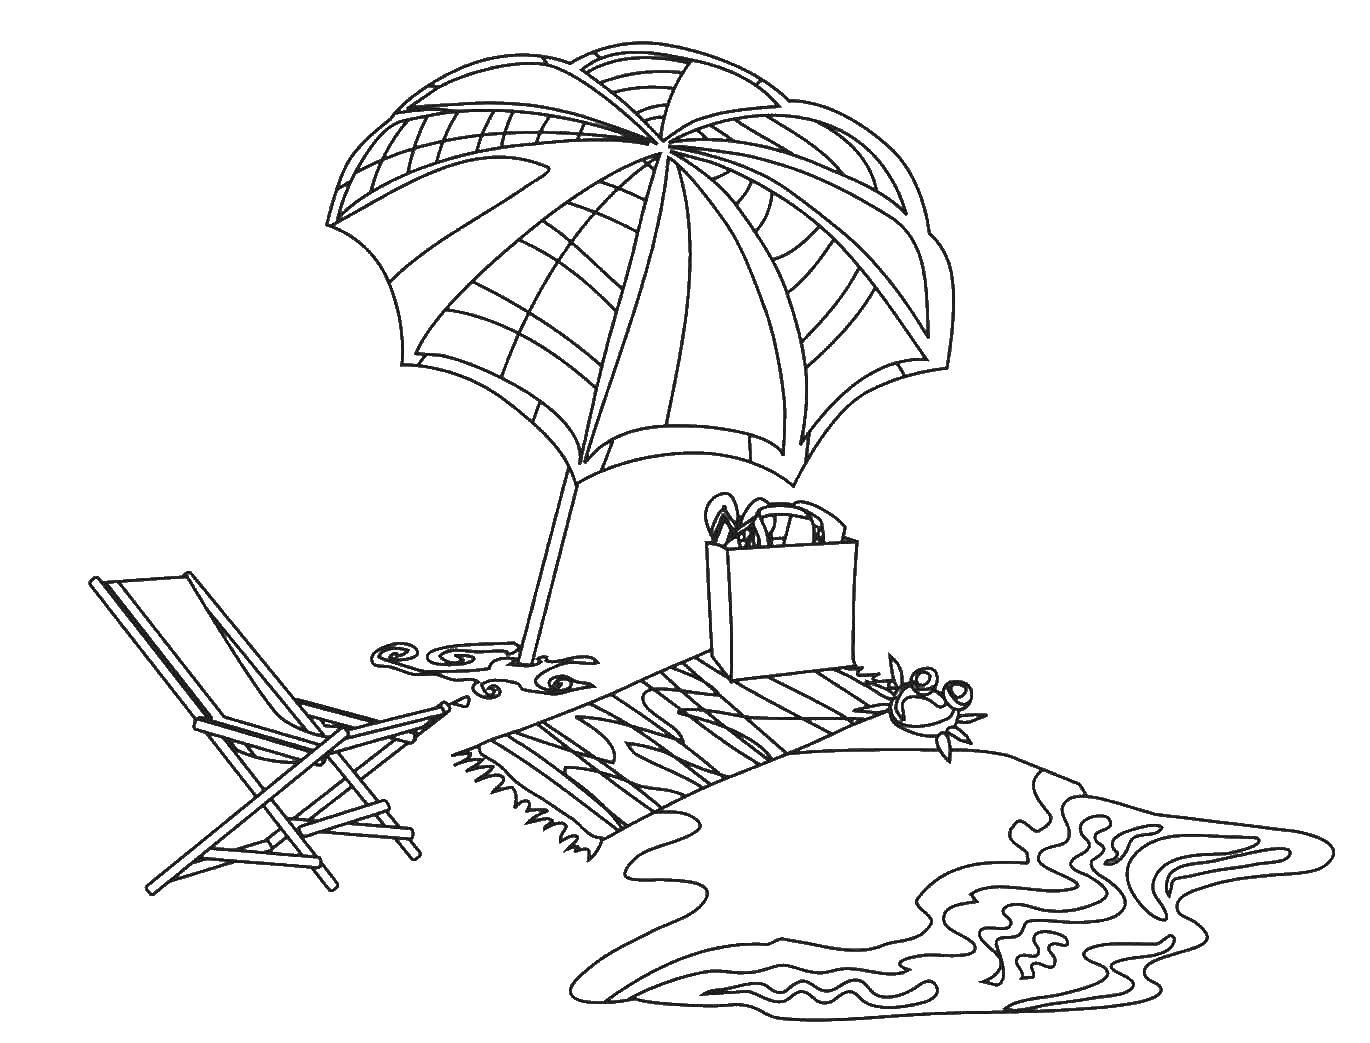 Coloring The beach and sea. Category Summer fun. Tags:  umbrella, beach, beach chair, Mat.